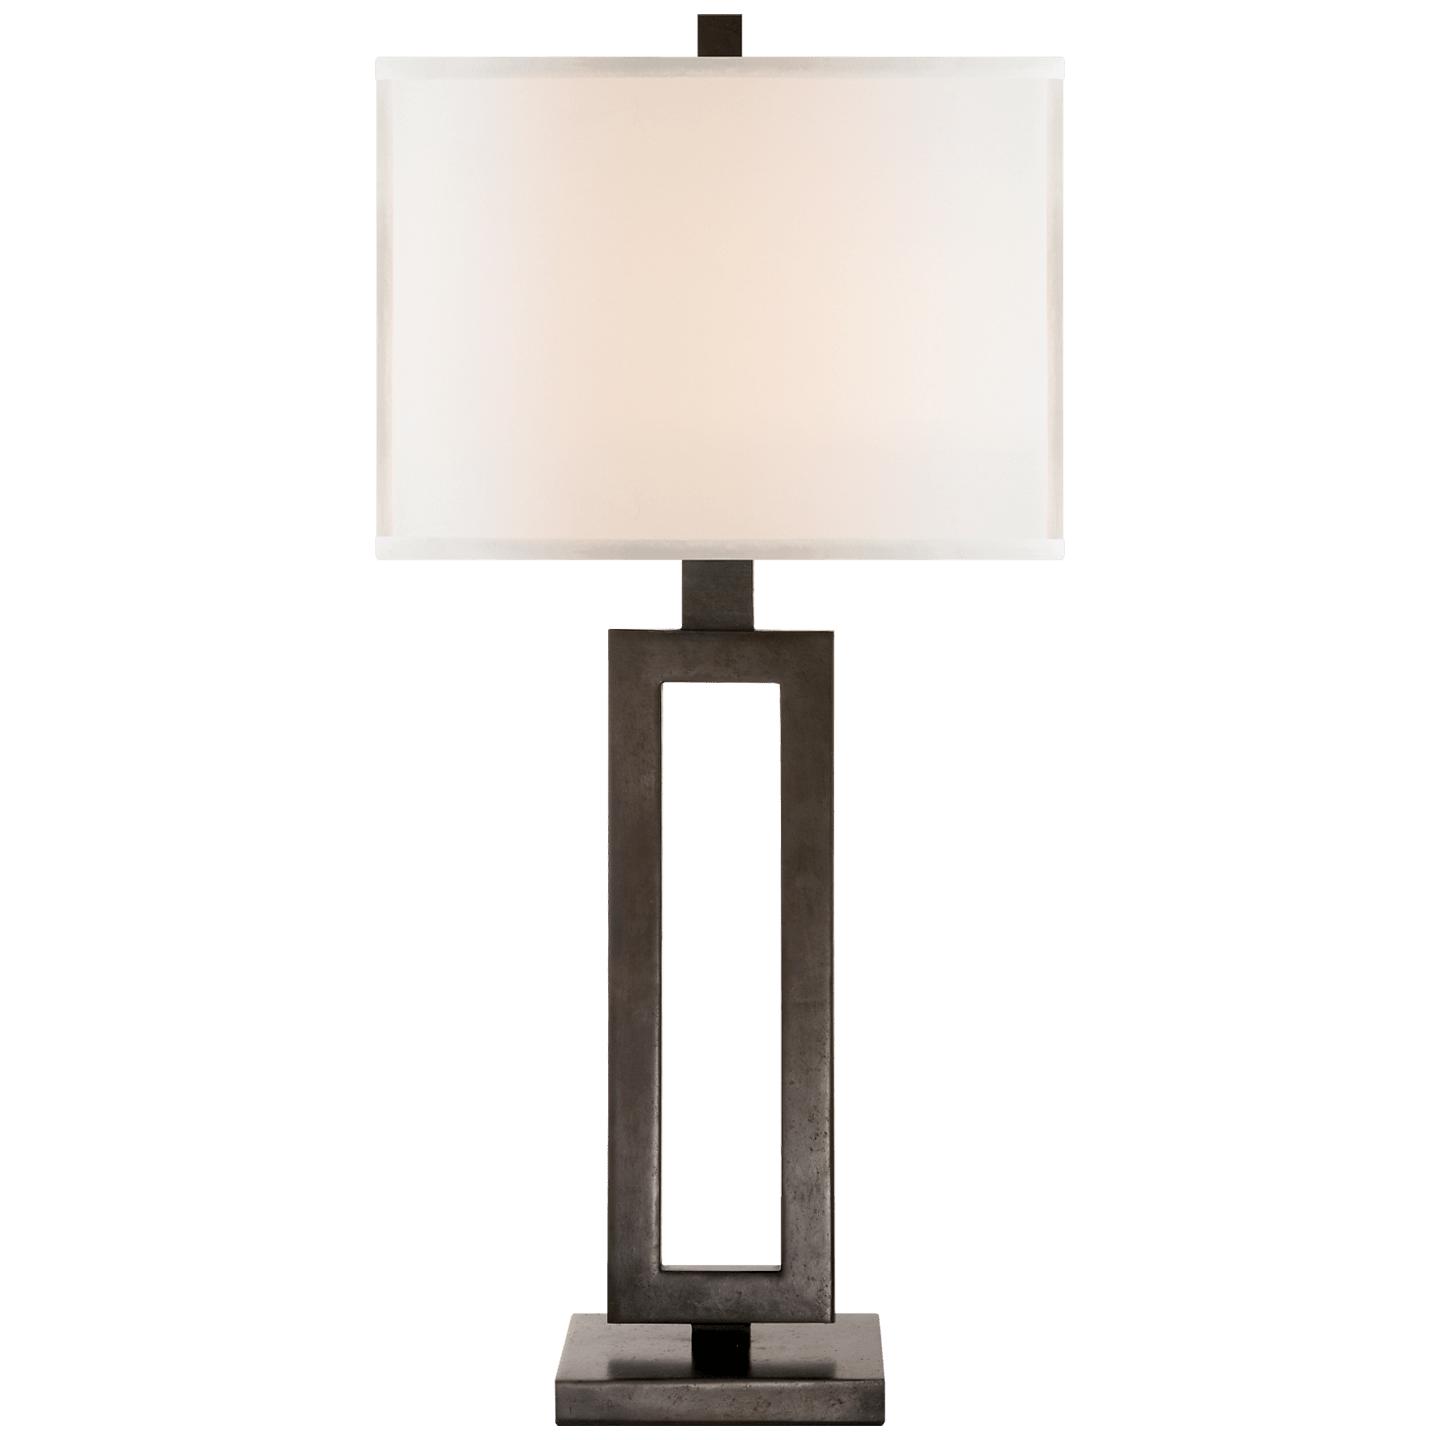 Купить Настольная лампа Mod Tall Table Lamp в интернет-магазине roooms.ru